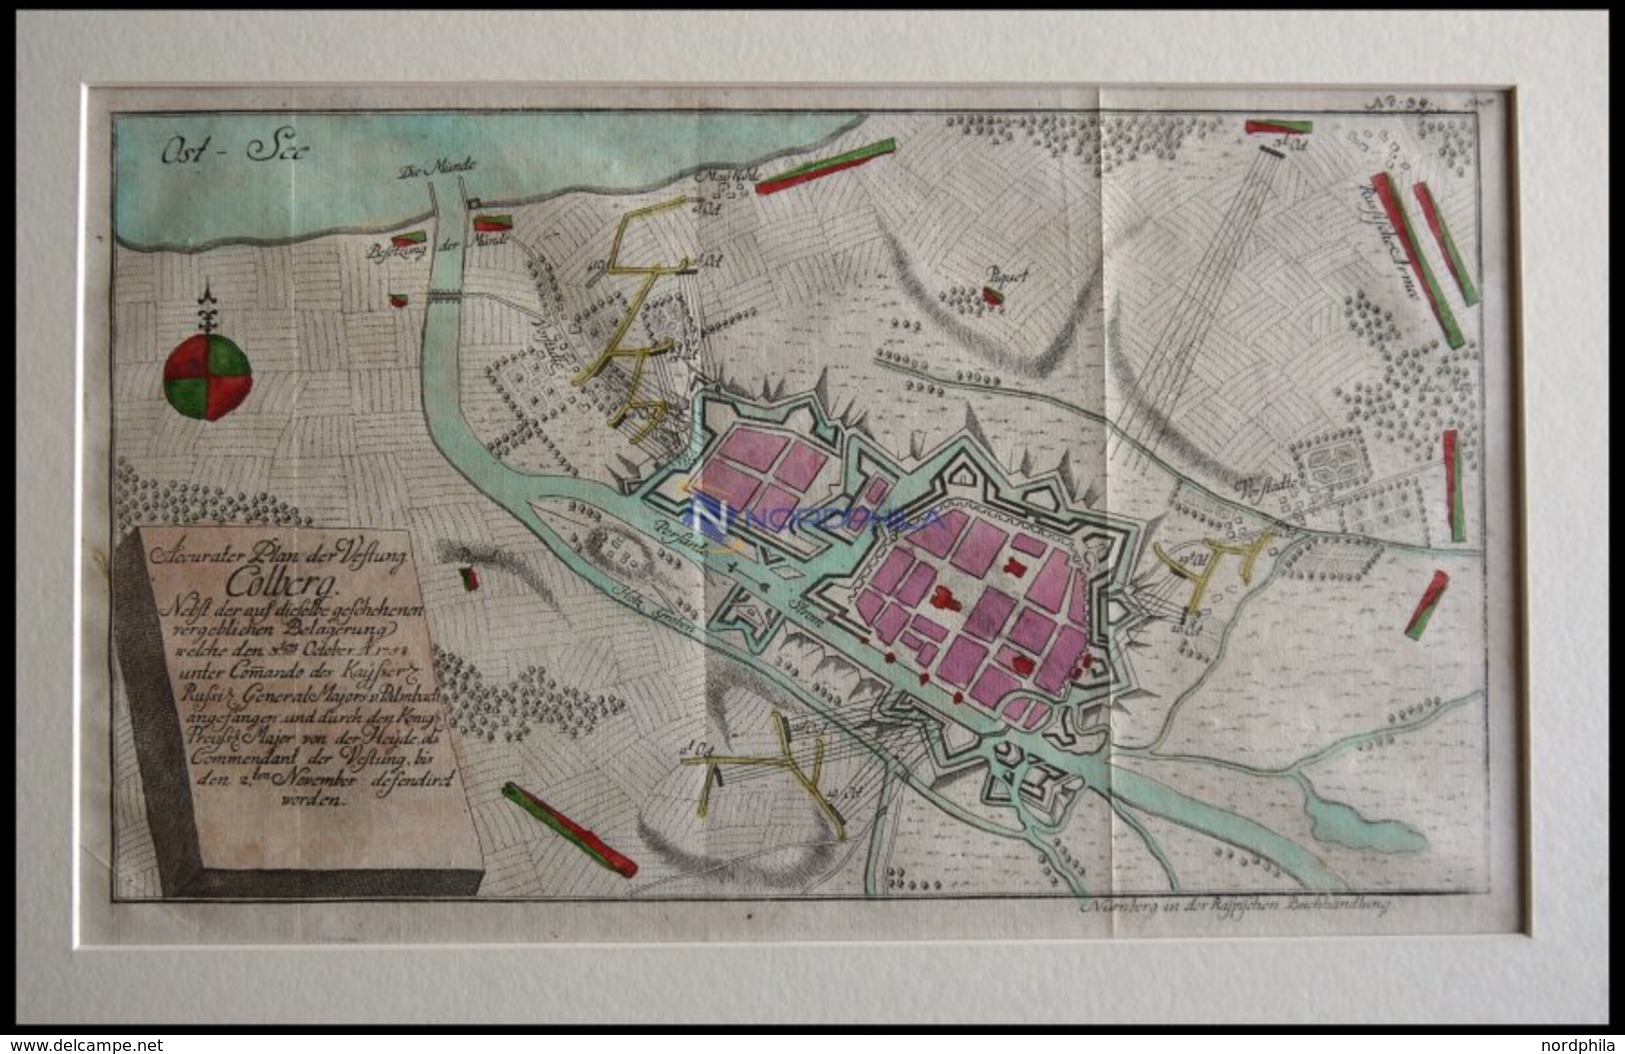 COLBERG, Festungsplan Der Belagerung Vom 3.10.1758, Altkolorierter Kupferstich Bei Raspische Buchhandlung 1760 - Lithographies